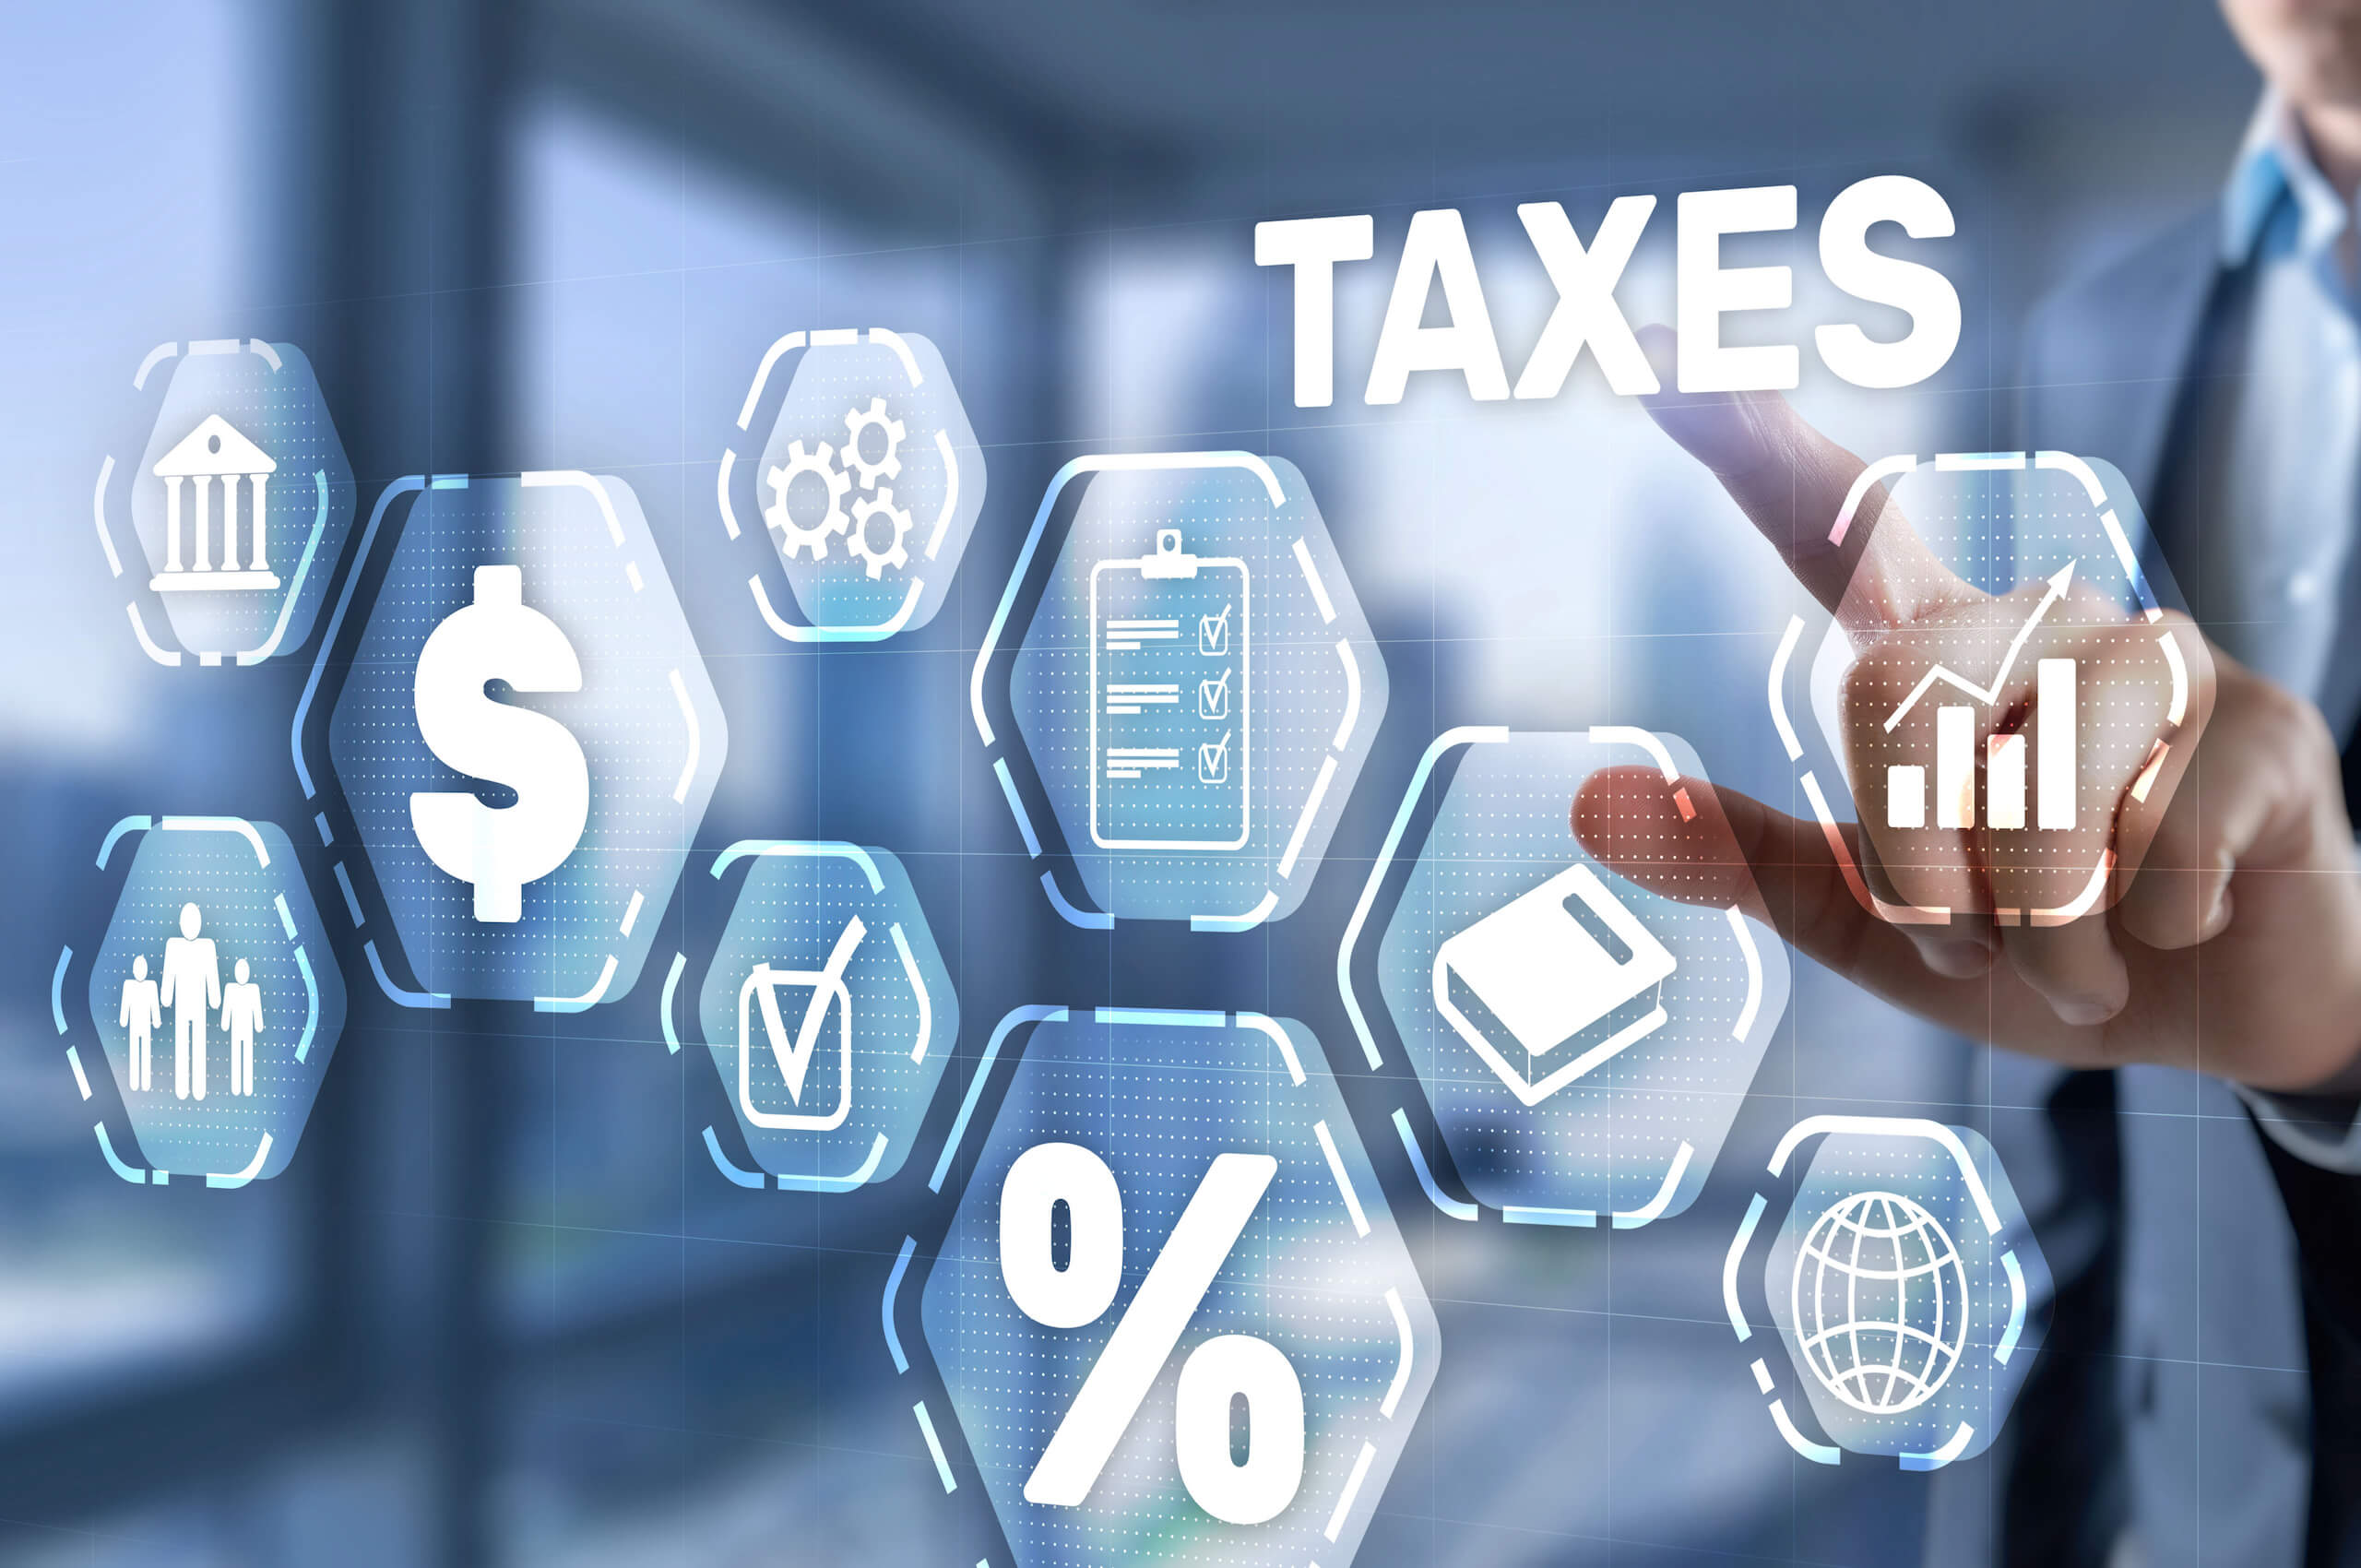 Việc khai báo thuế đúng và đủ cũng giúp doanh nghiệp FDI tránh các rủi ro và phạt nộp muộn hoặc nộp thiếu.